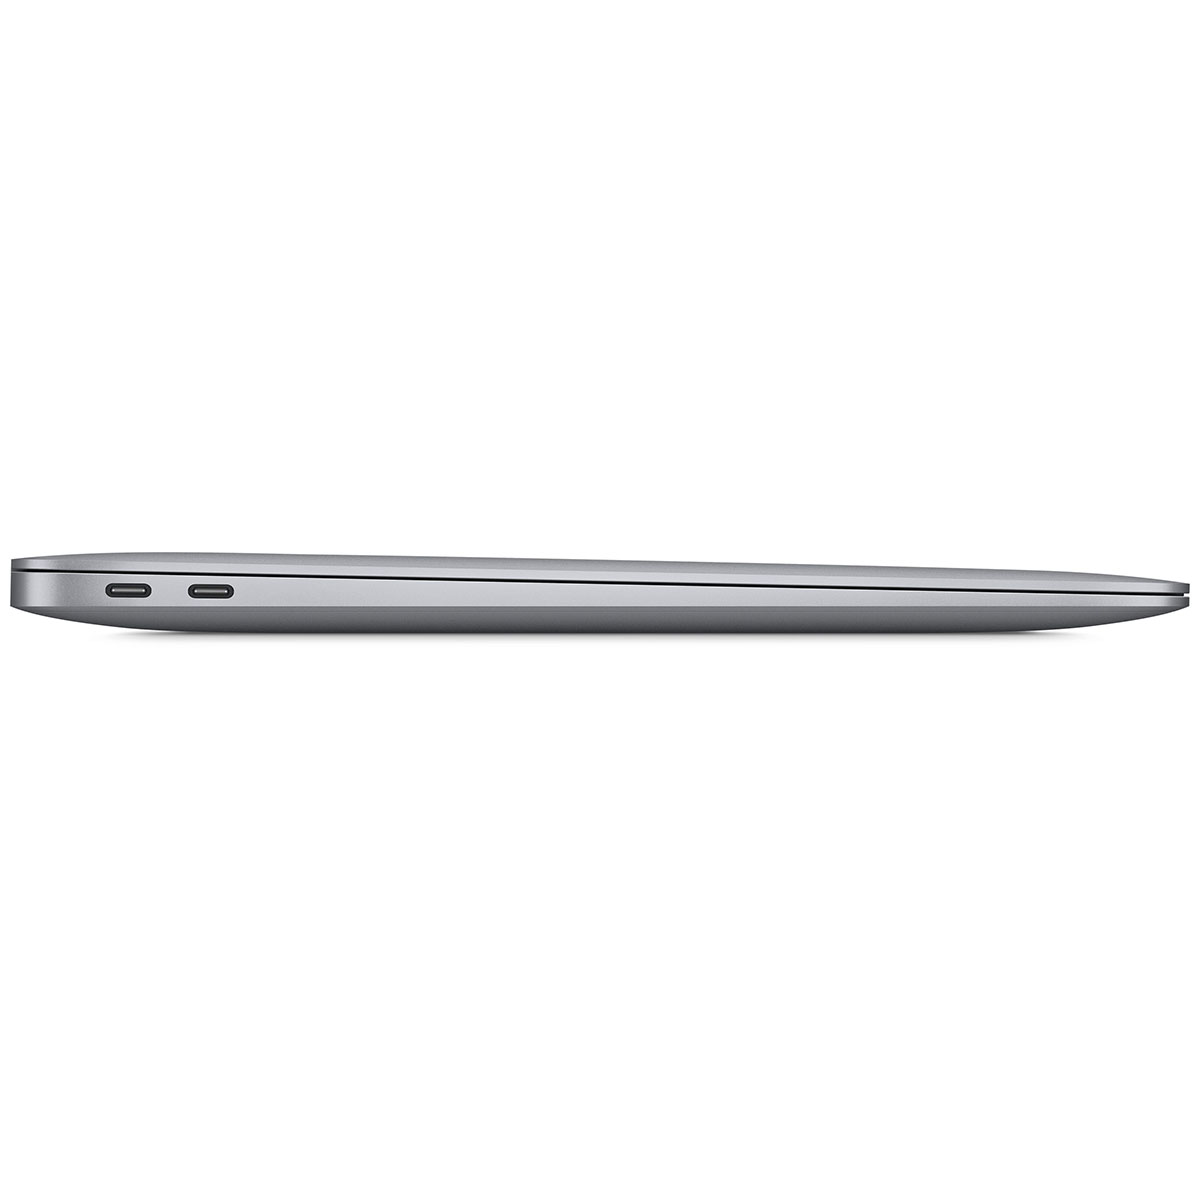 Apple Macbook Air 2020 13 inch (Apple M1 - 8GB/ 256GB) - MGND3SA/A